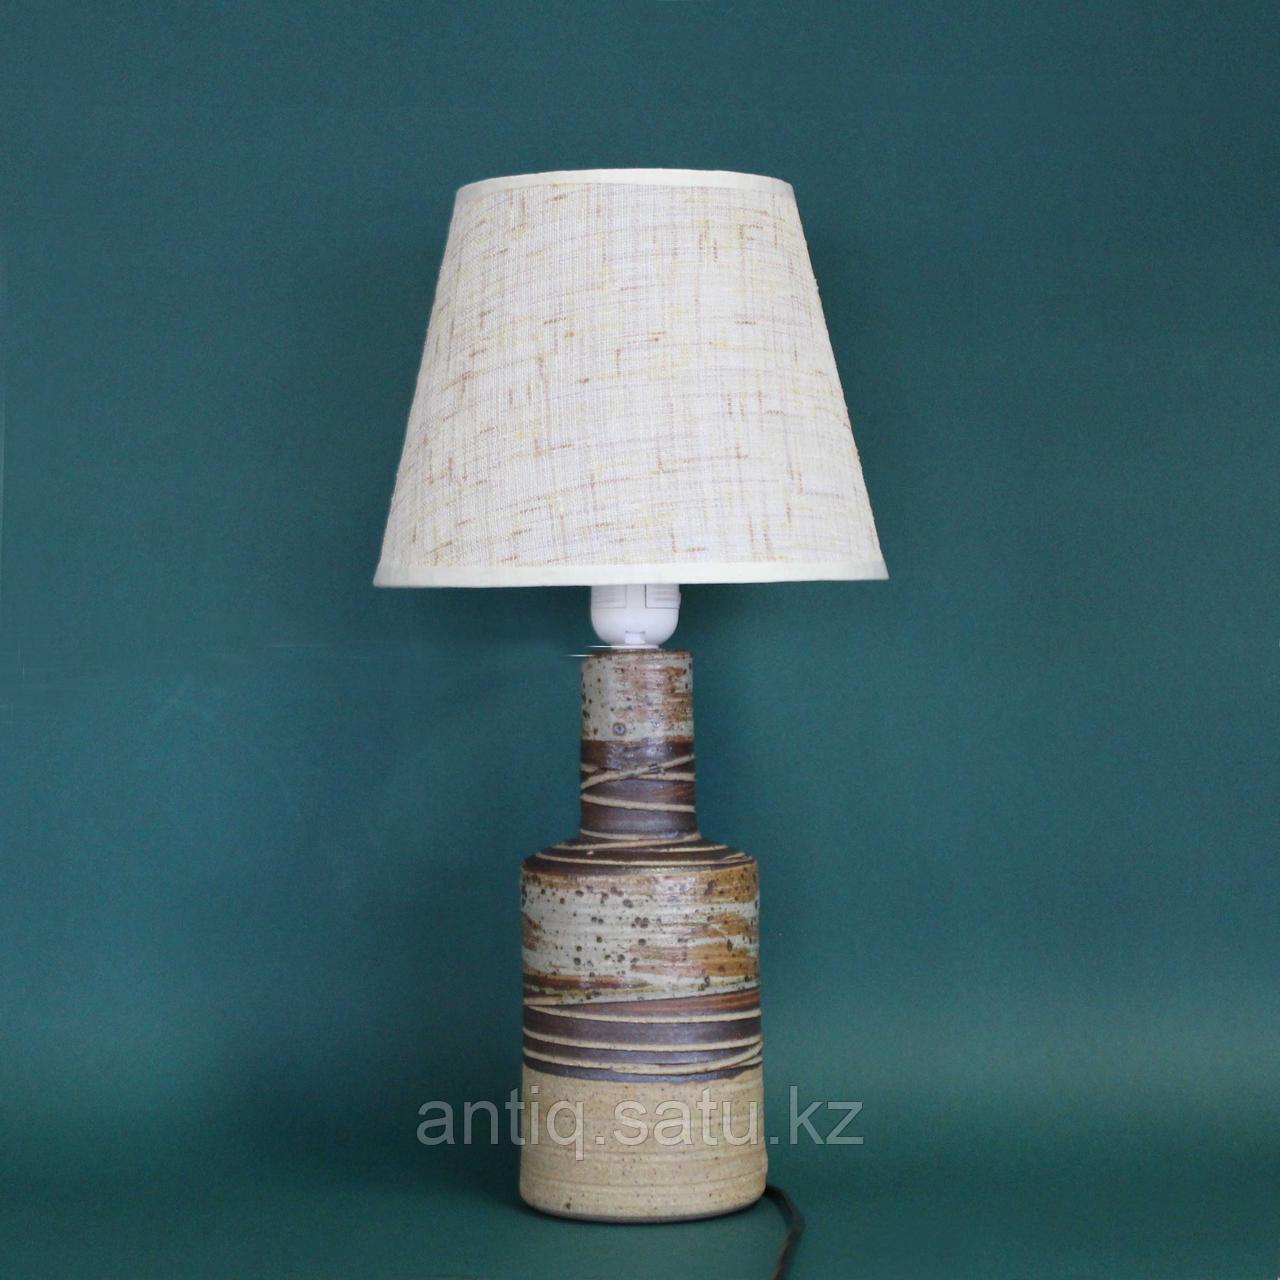 Дизайнерская настольная лампа из керамики  Производитель — Tue Poulsen